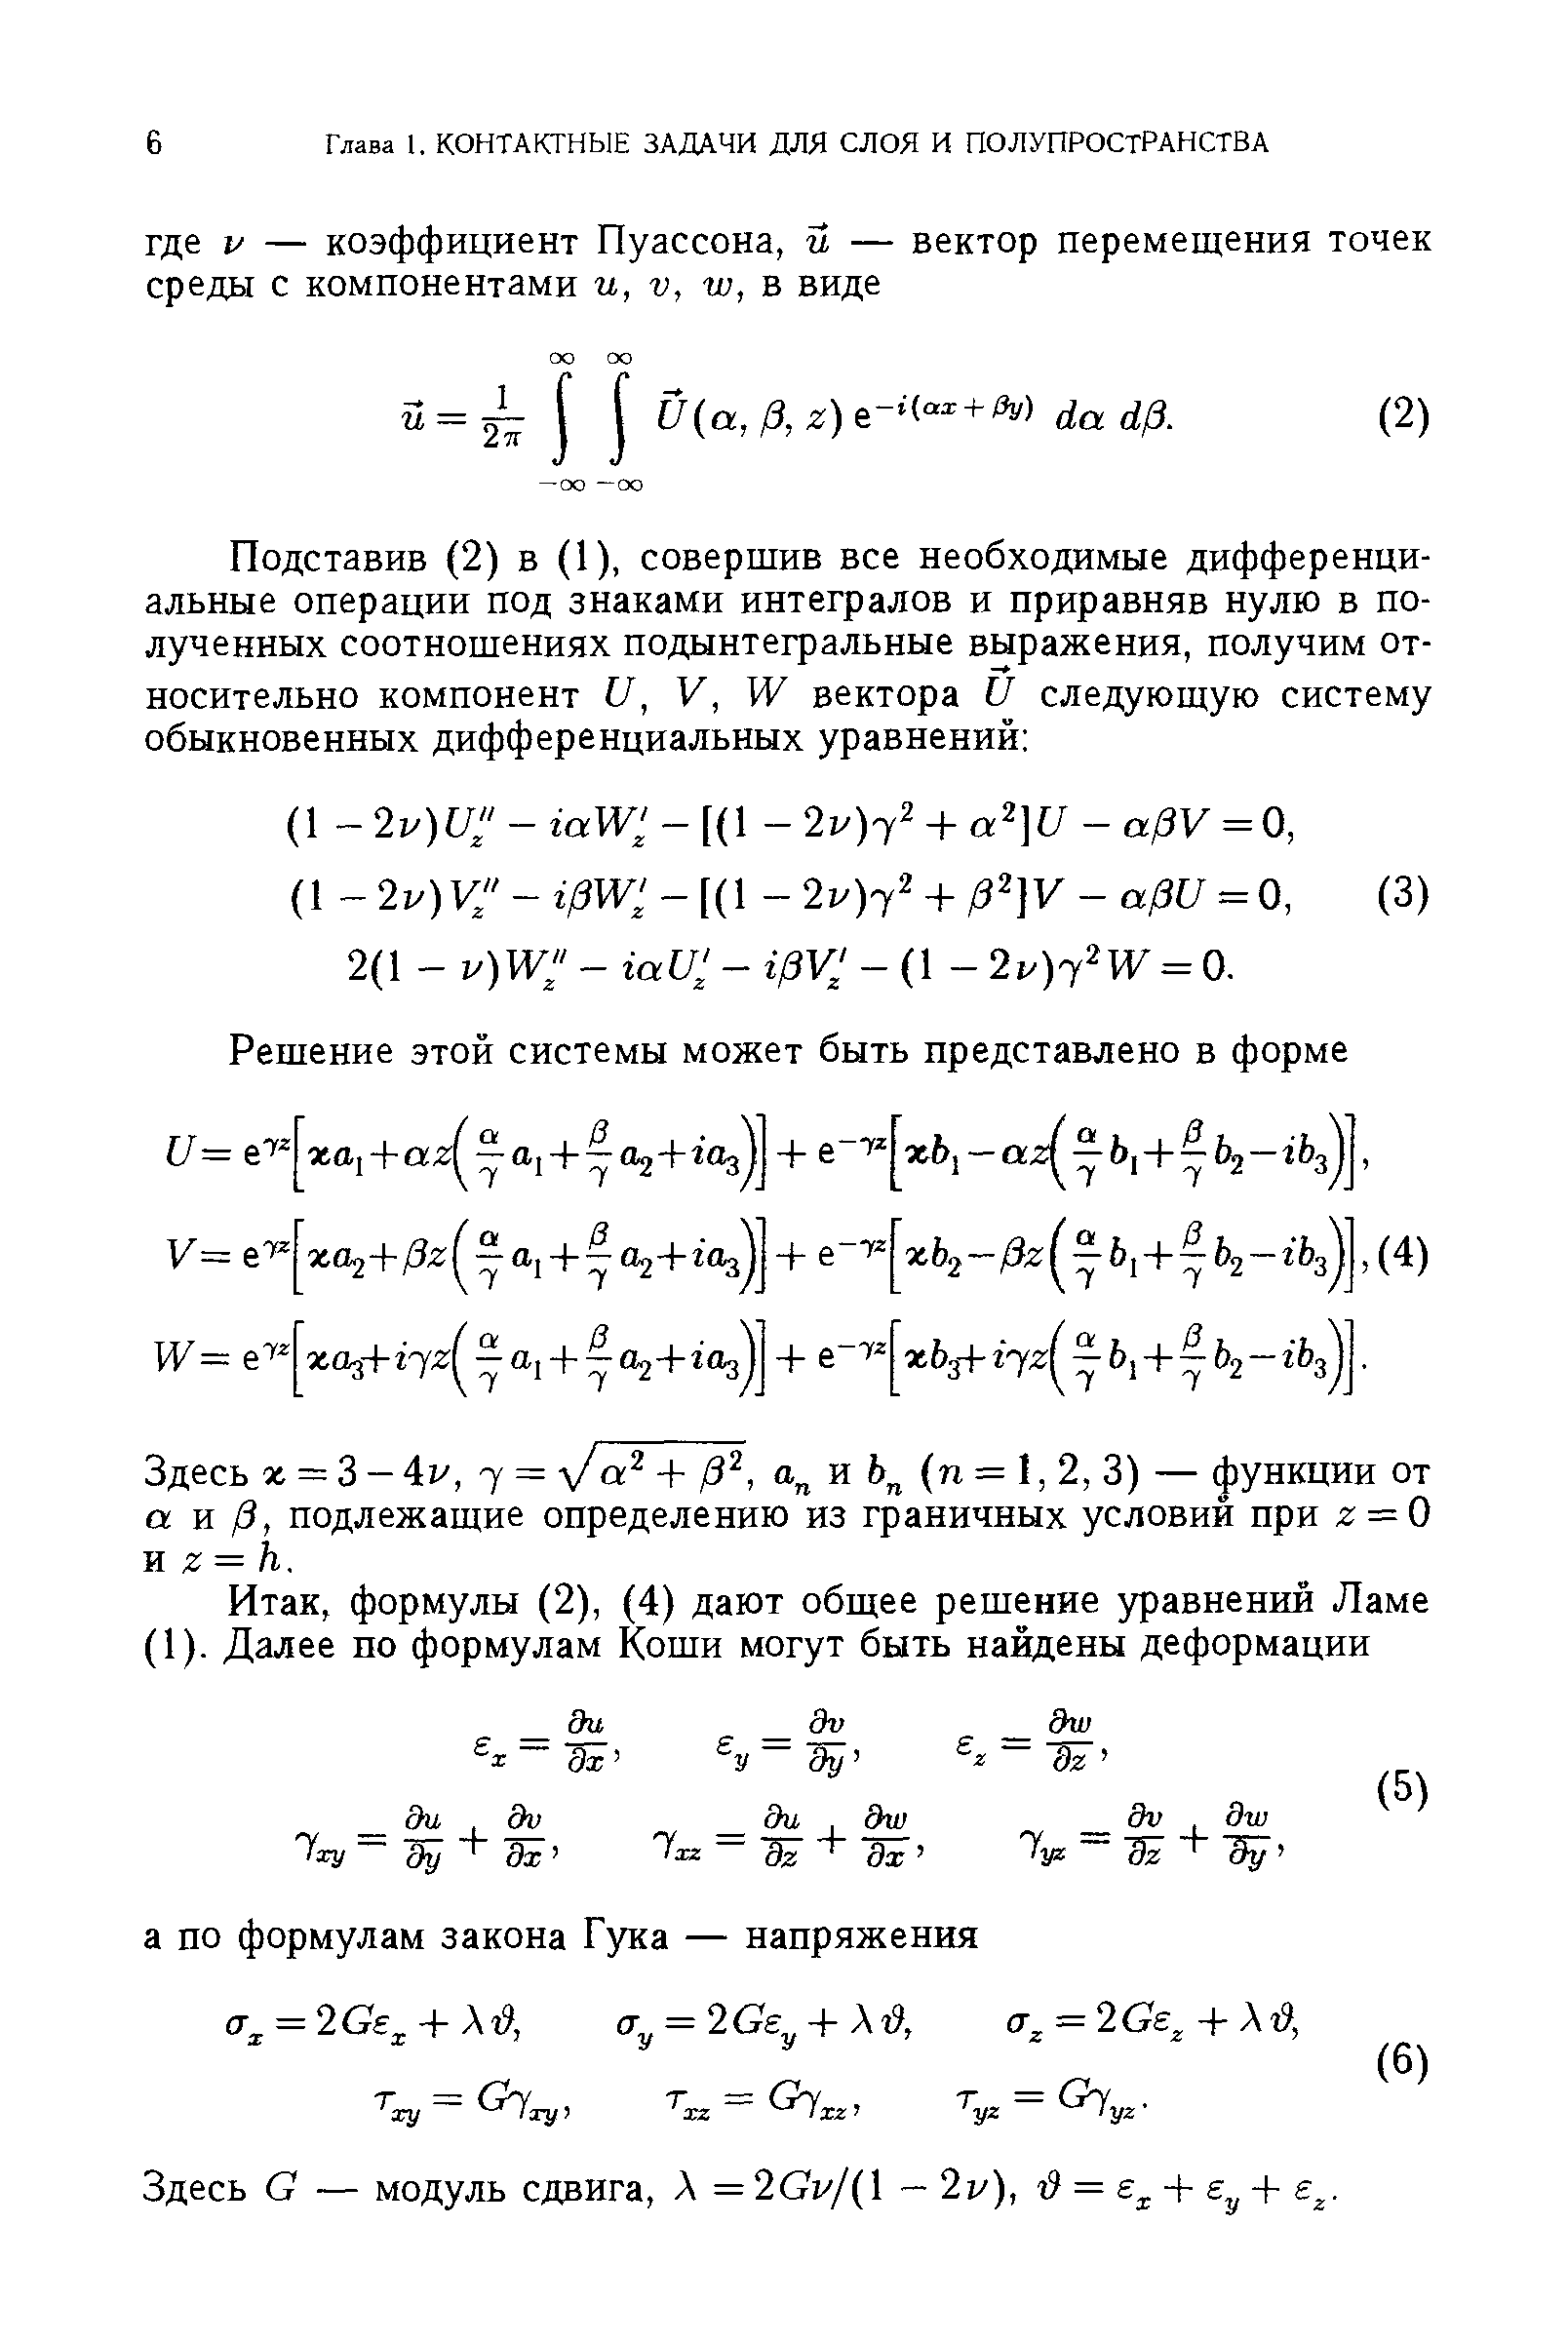 Здесь х = 3- 4гу, 7 = у/ + /3 , и (п = 1, 2, 3) — функции от а и /3, подлежащие определению из граничных условий при г = 0 я г = к.
